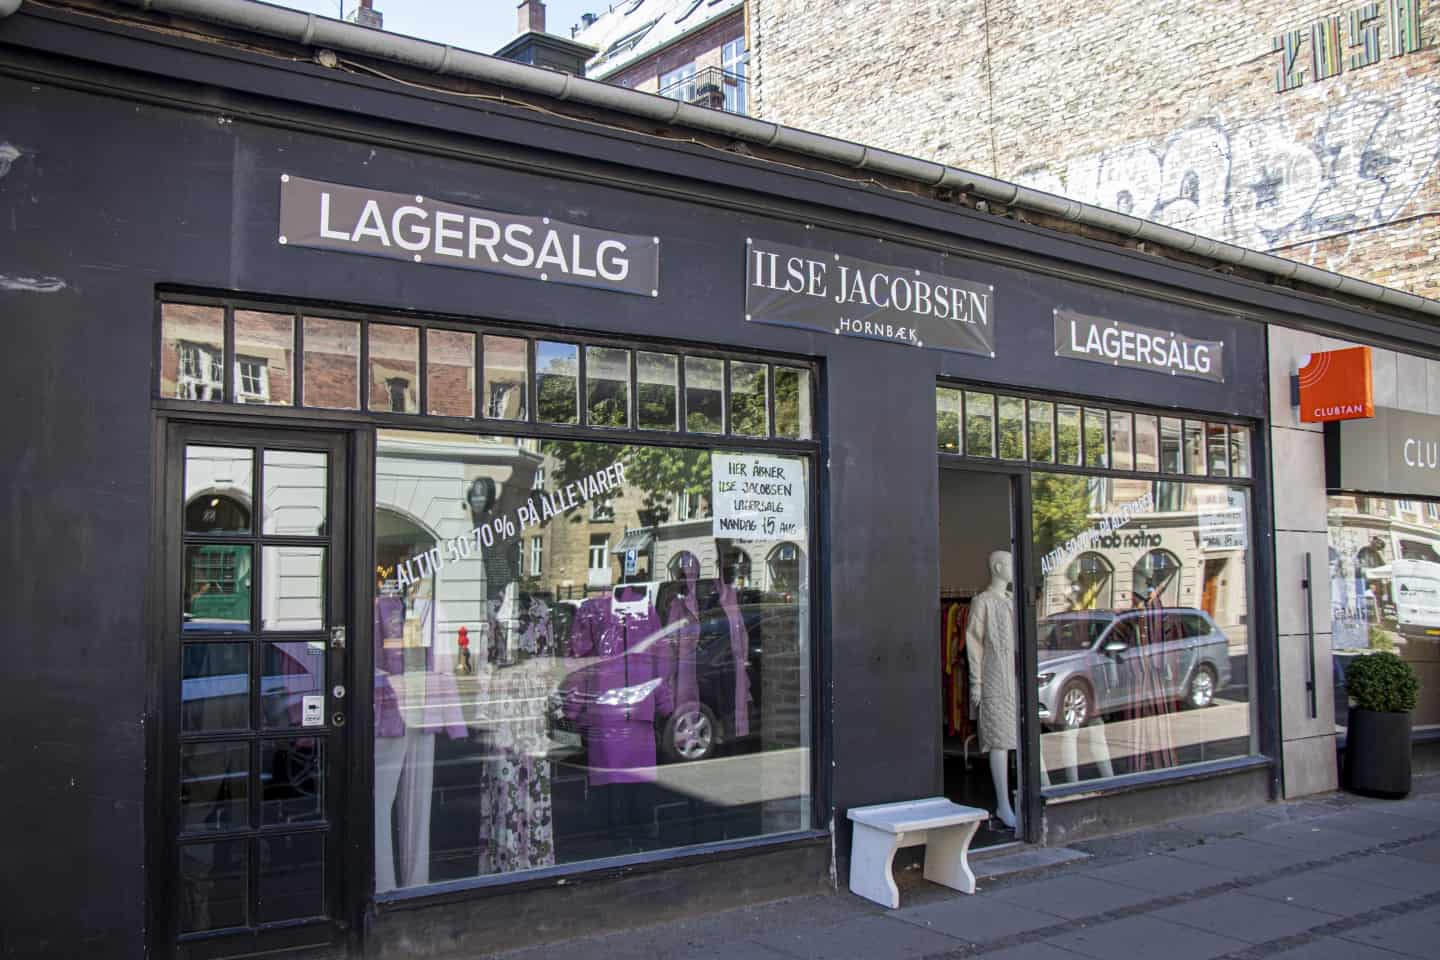 Lagersalg i Ilse Jacobsen-outlet med frakker og kjoler baner | frederiksbergliv.dk